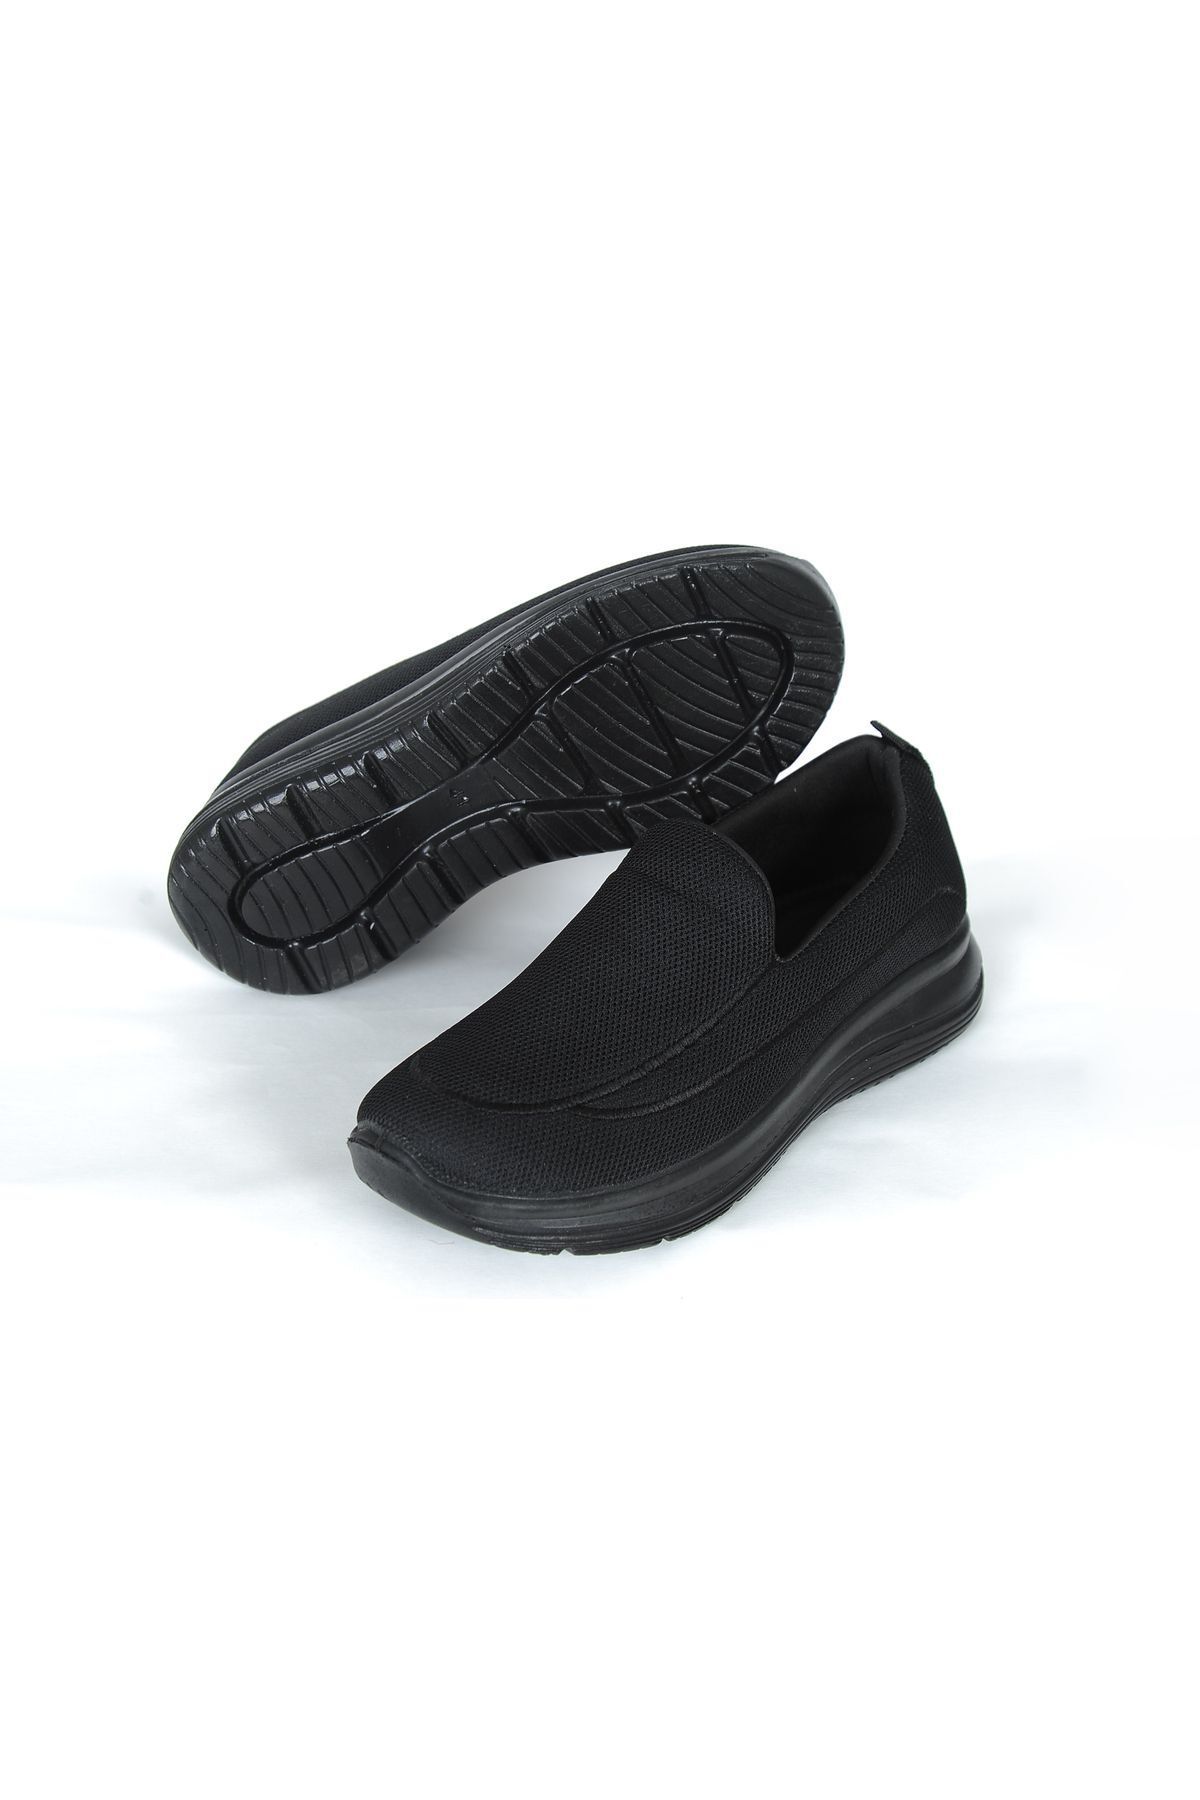 Phobos Unisex Aqua Yazlık Hava Alabilen Günlük Ayakkabı Çok Rahat Yürüyüş Ayakkabısı Sneakers